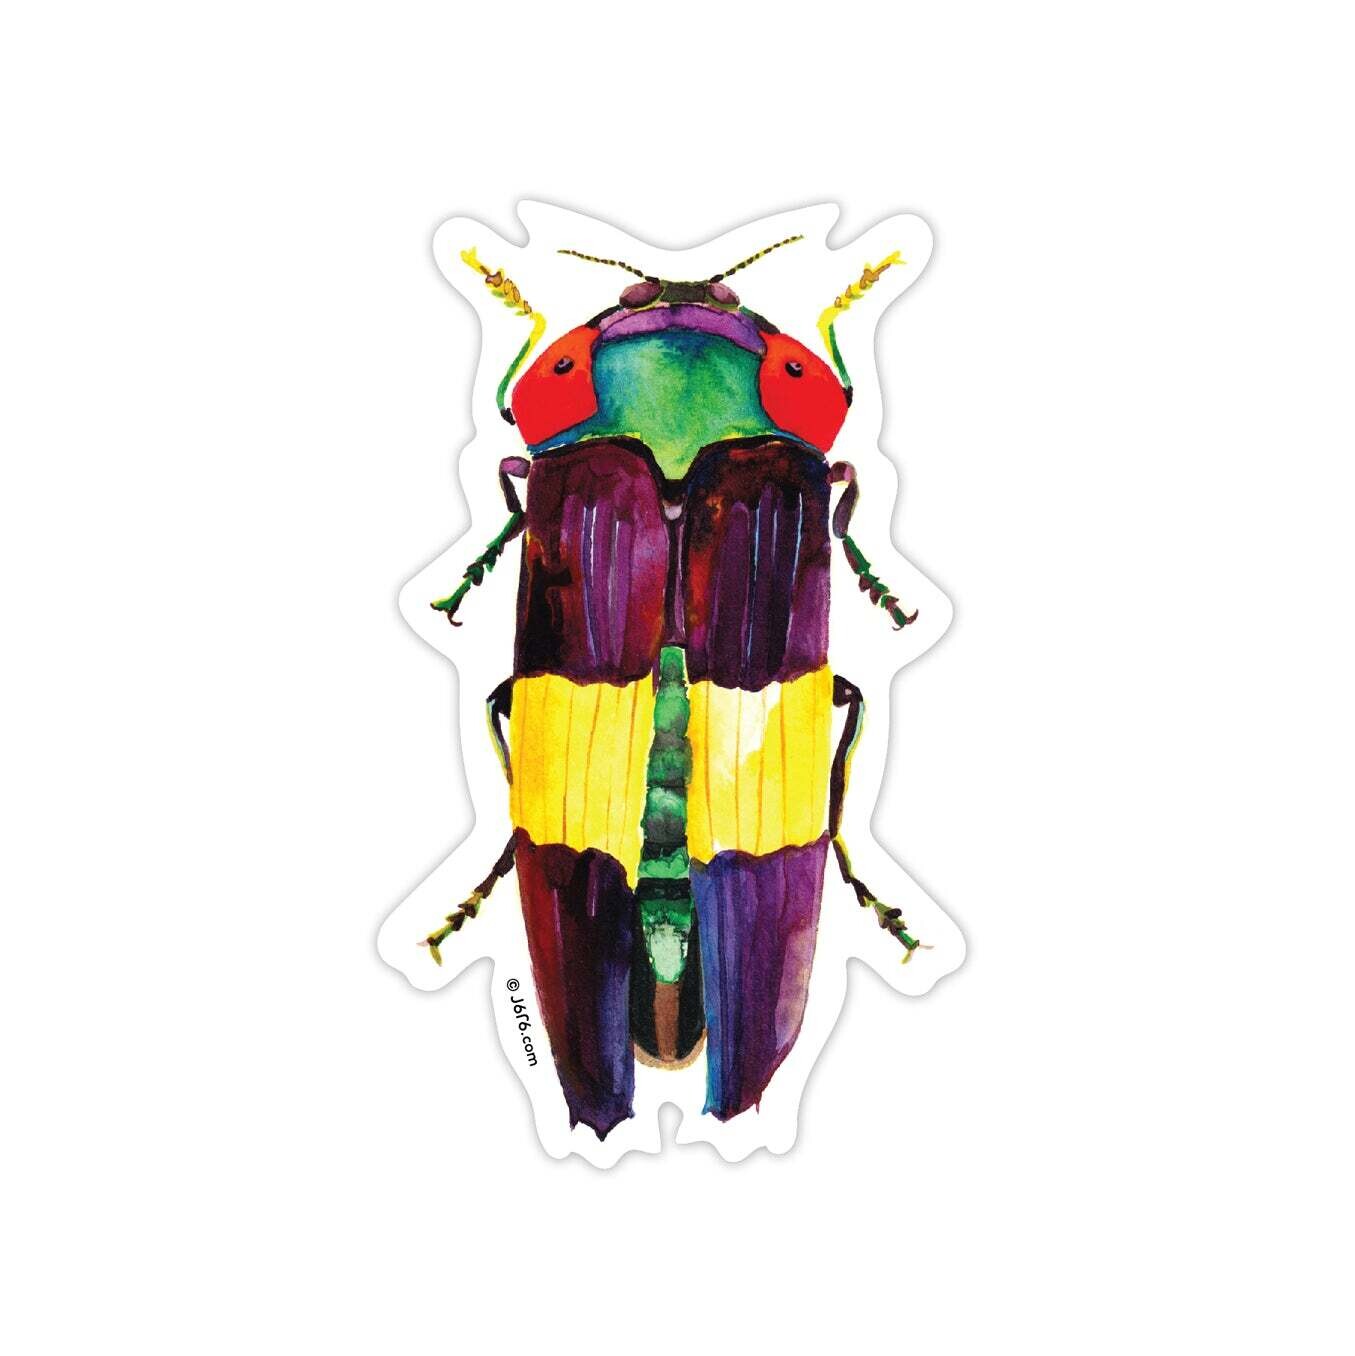 Jewel Beetle Rainbow Sticker (IN-ST- 006)